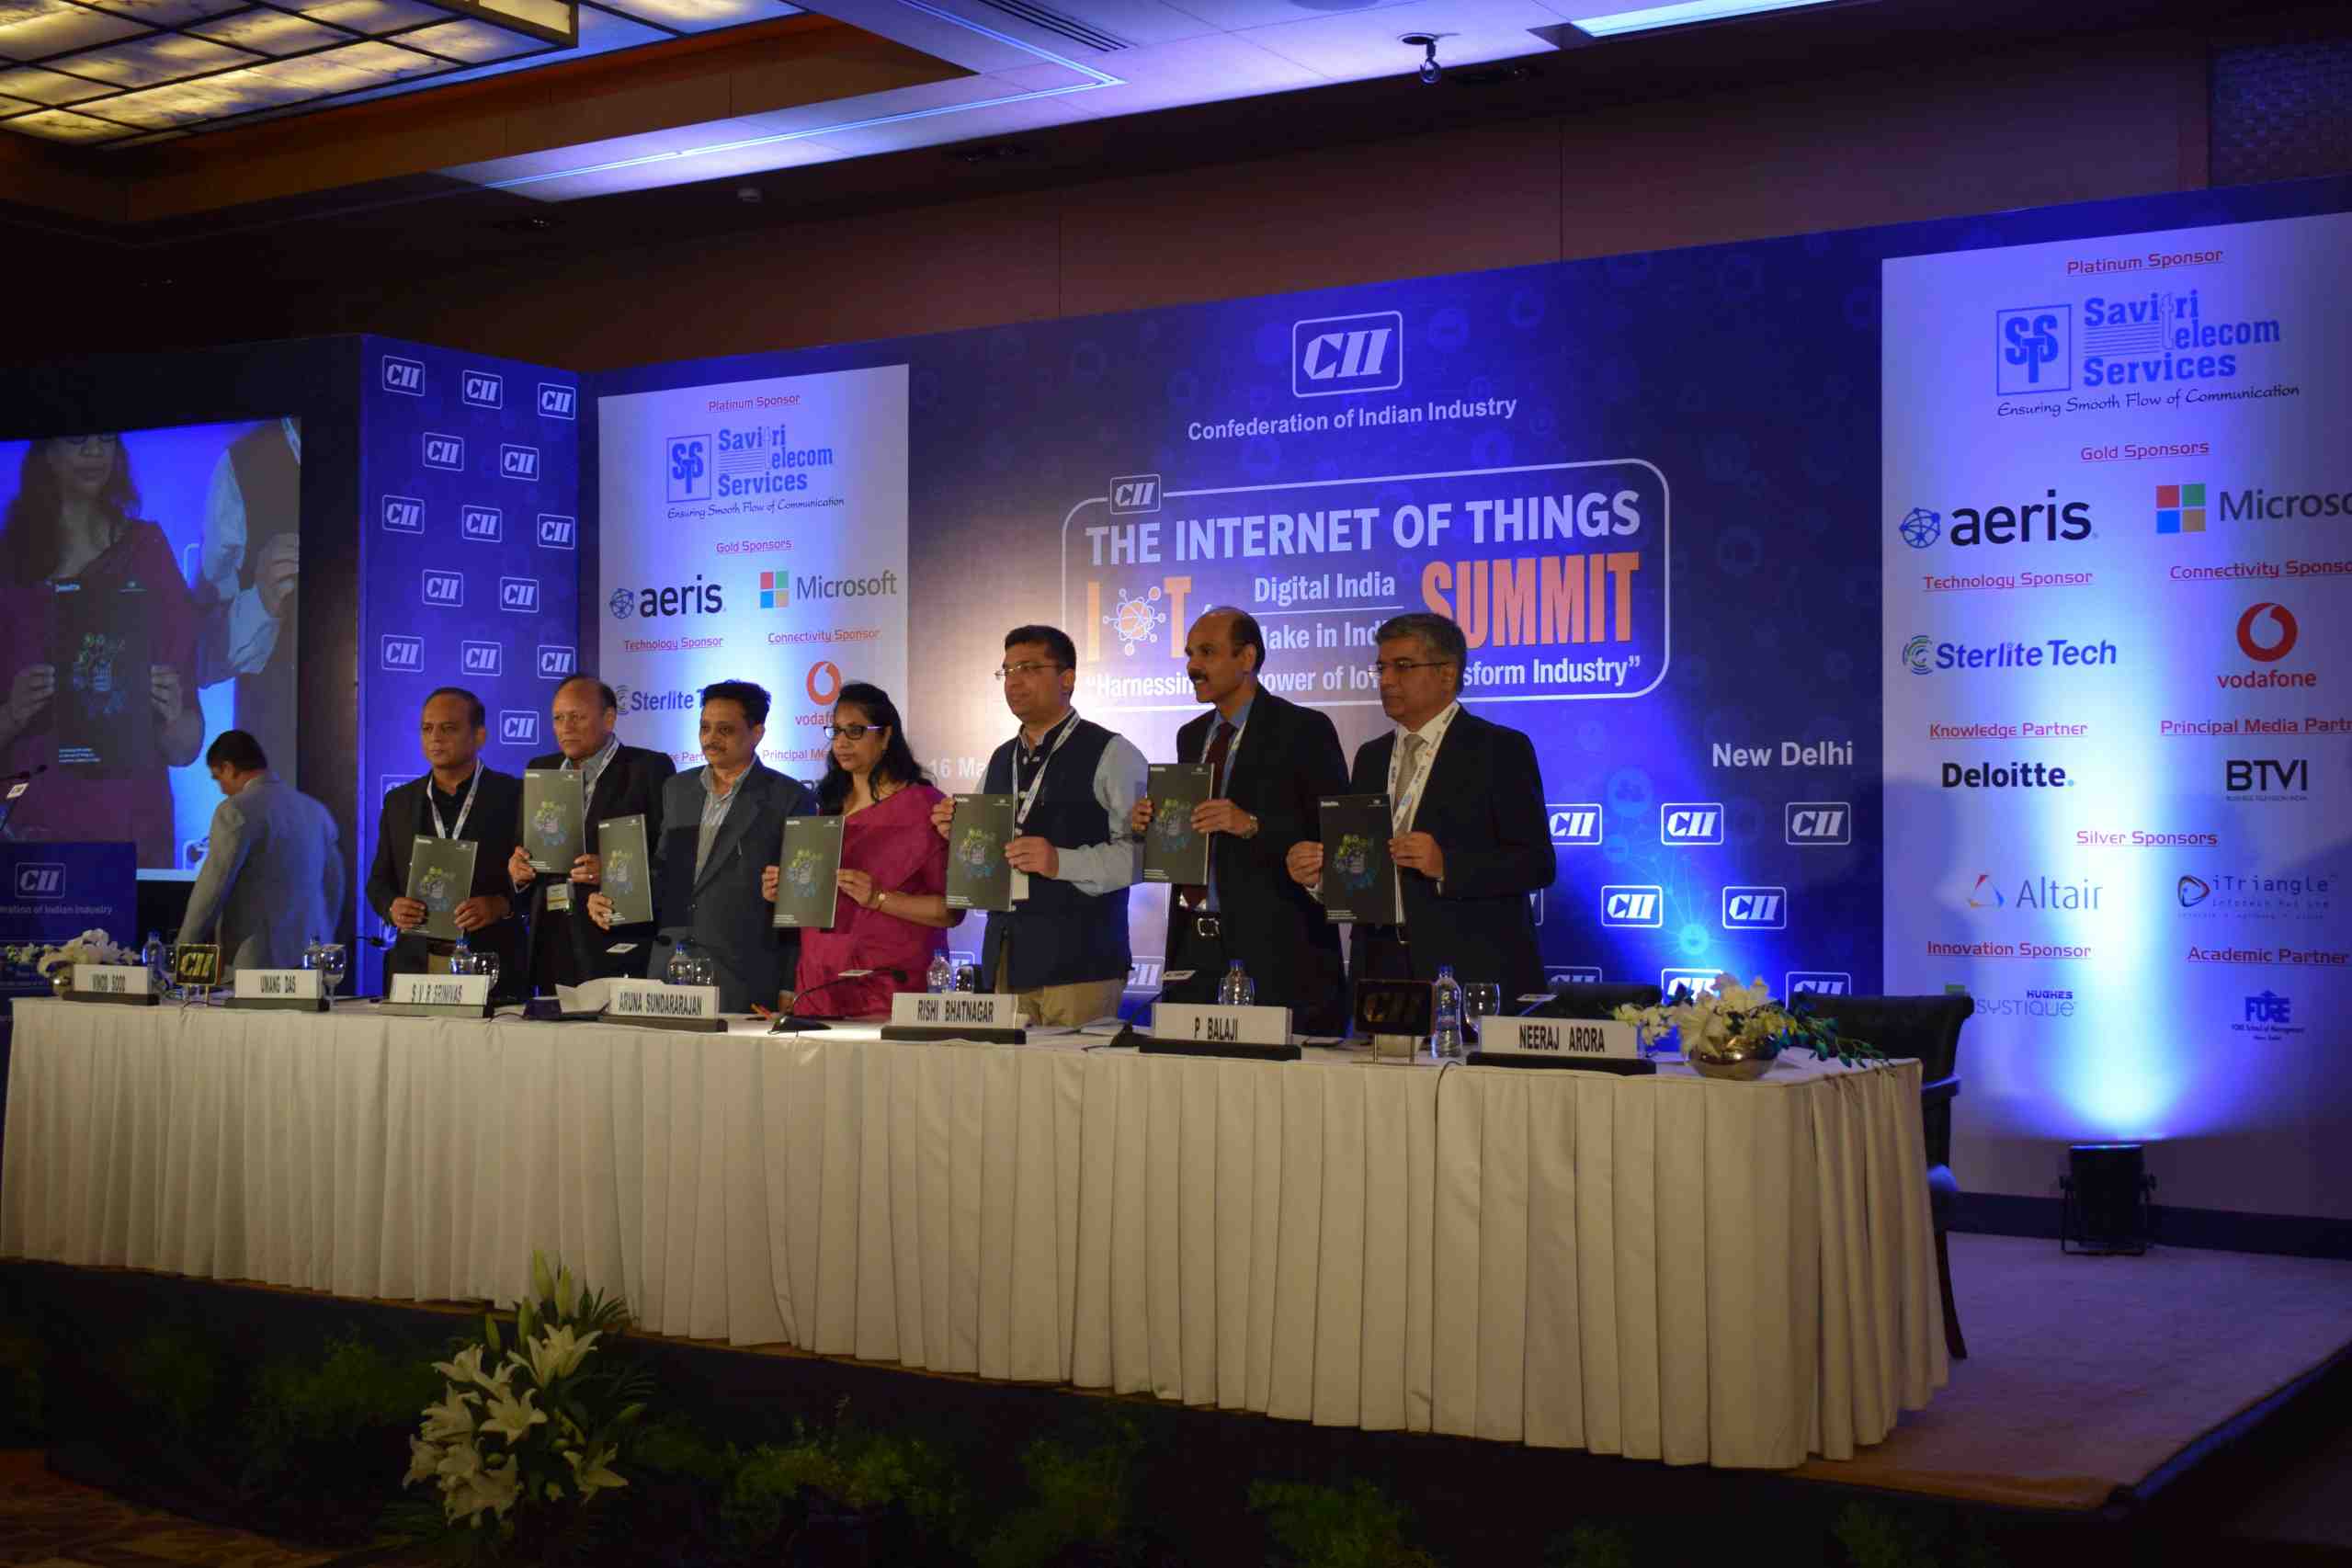 IoT Summit 2018 By CII